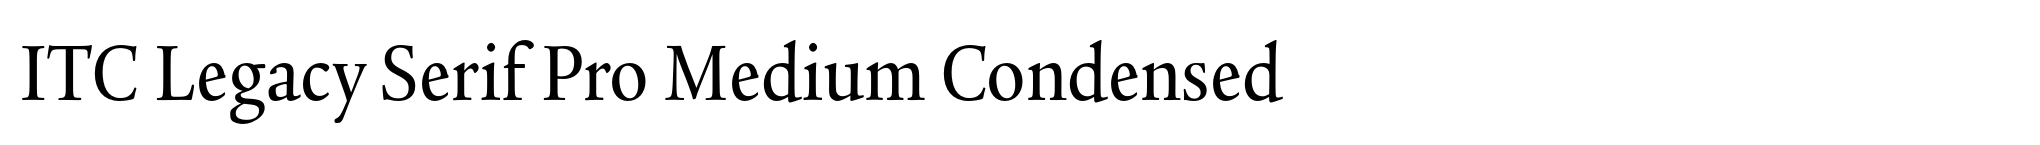 ITC Legacy Serif Pro Medium Condensed image